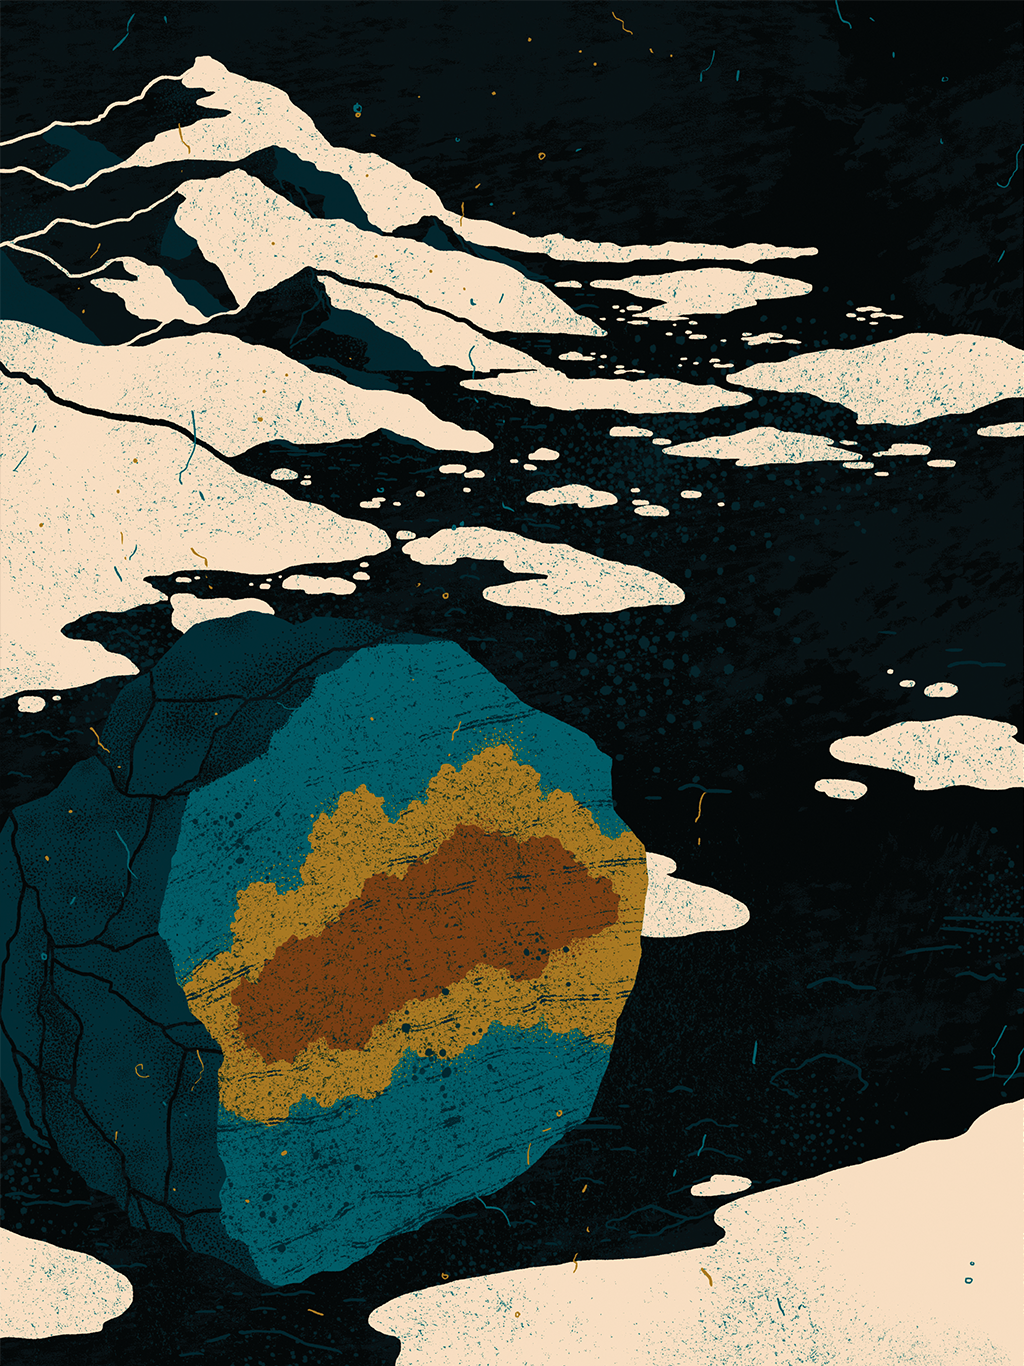 Ilustração de rocha em primeiro plano com coloração diferente no centro representando os microrganismos dentro dela, em meio a um lago seco na Antártica.